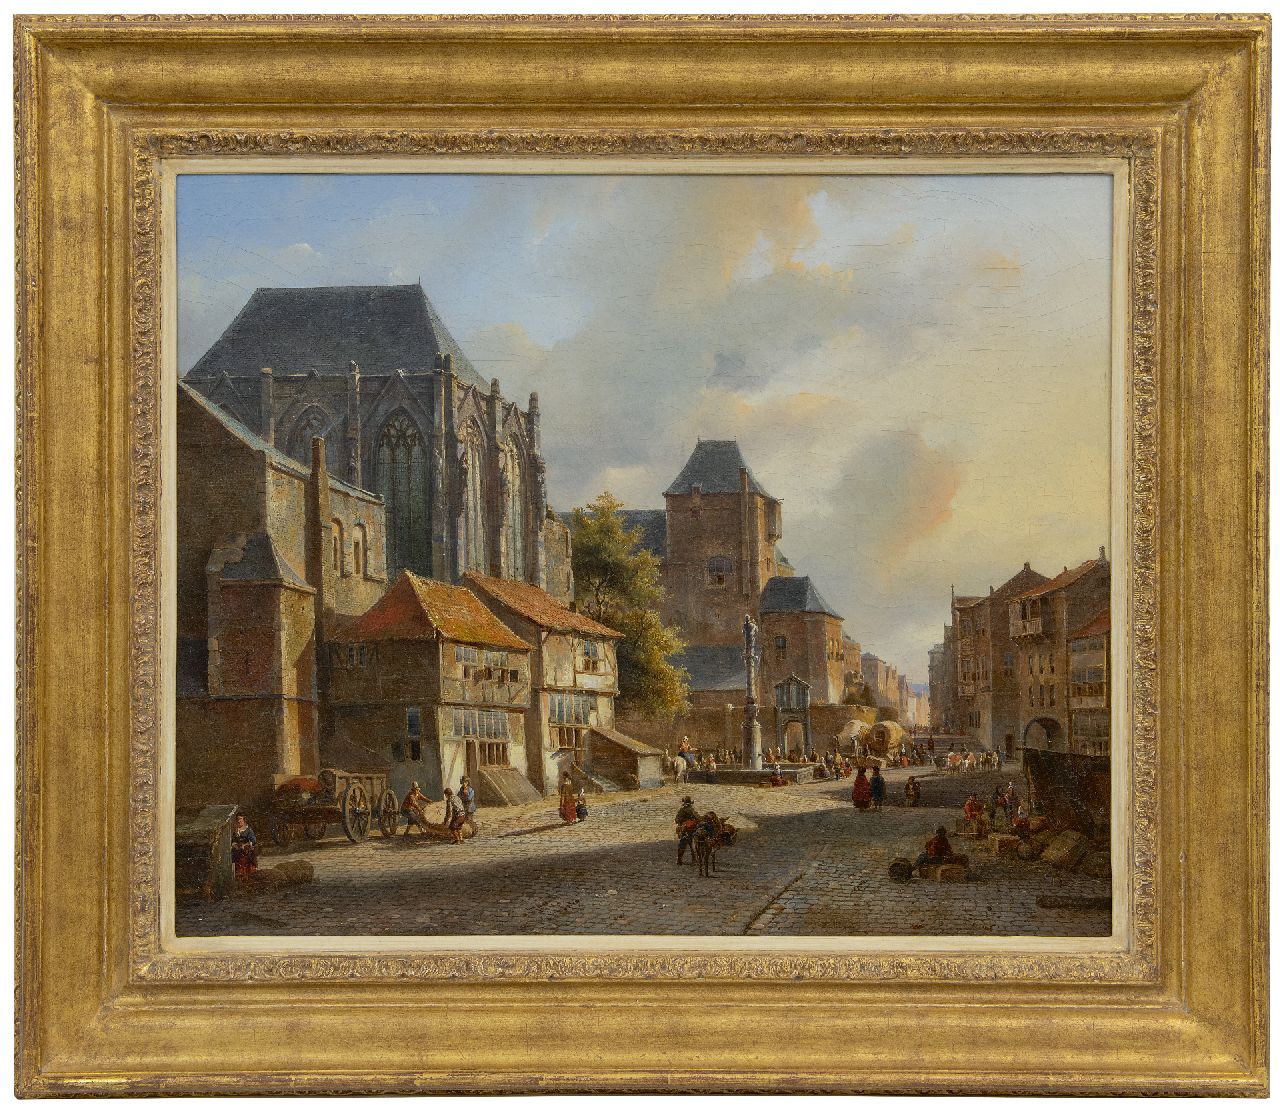 Karsen K.  | Kasparus Karsen | Schilderijen te koop aangeboden | Markt op een zonnig stadsplein, olieverf op doek 49,0 x 59,5 cm, gesigneerd rechtsonder